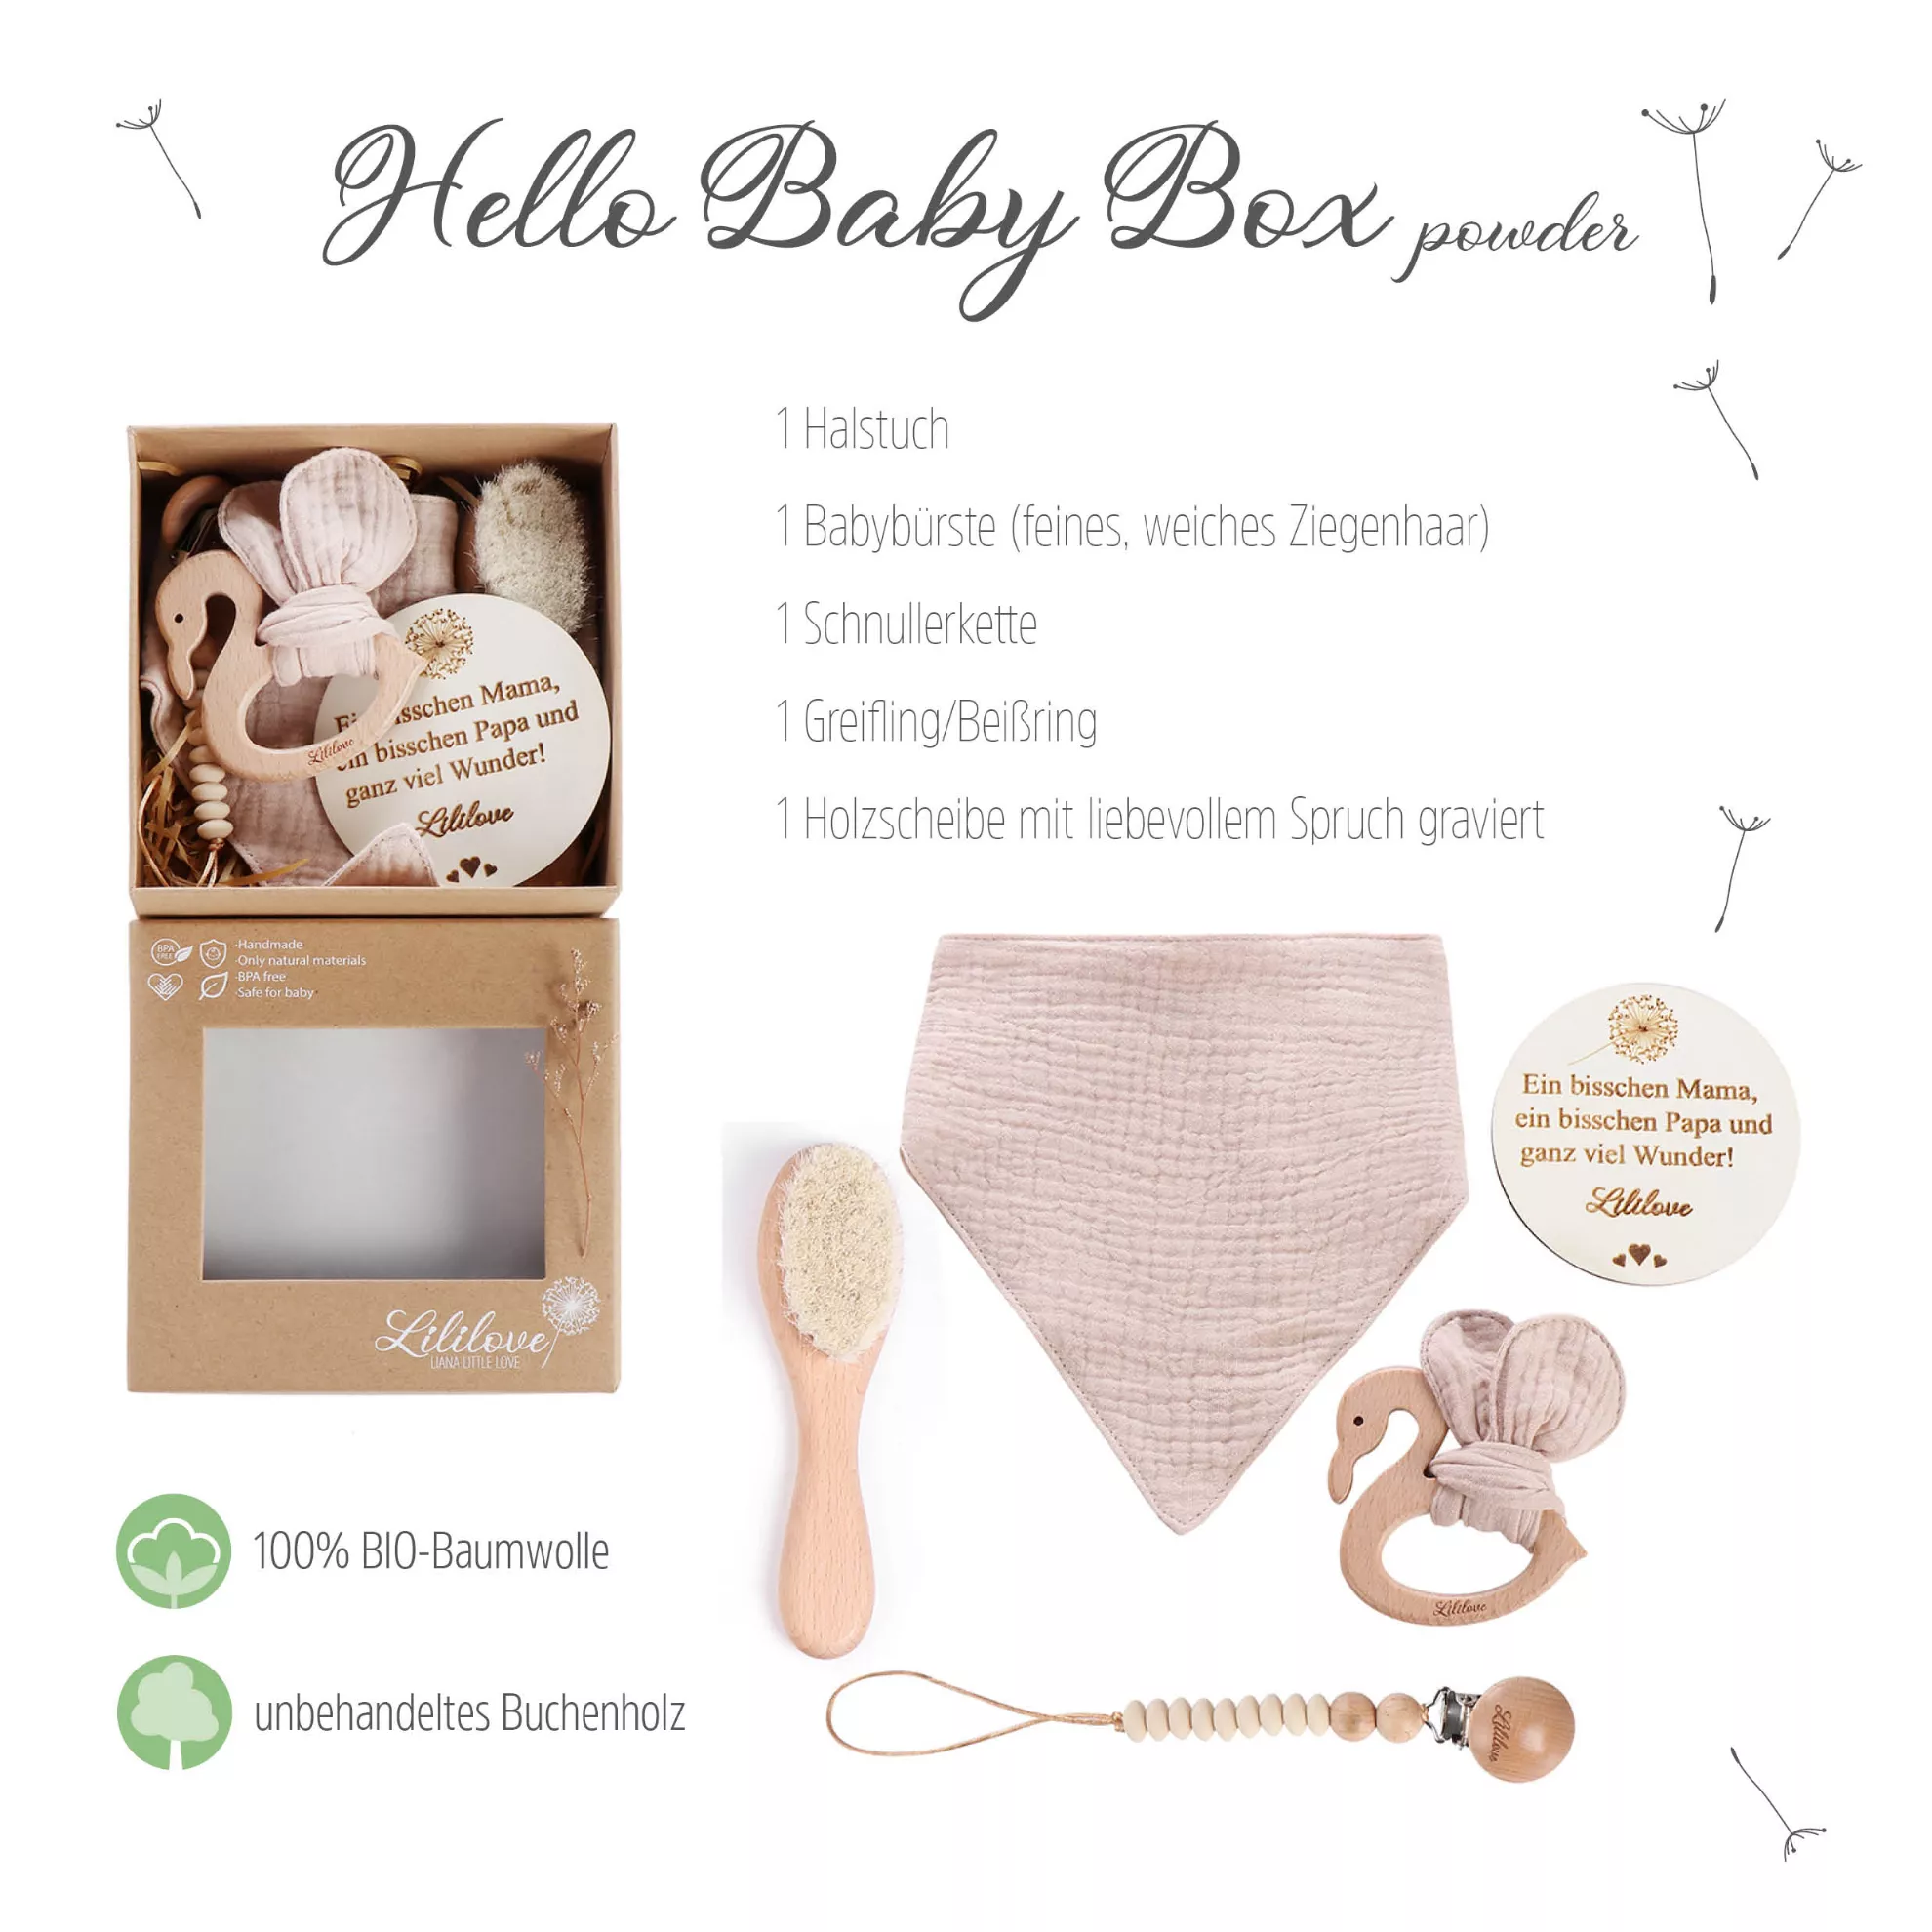 - Hello Lililove powder Baby Box Geschenkset